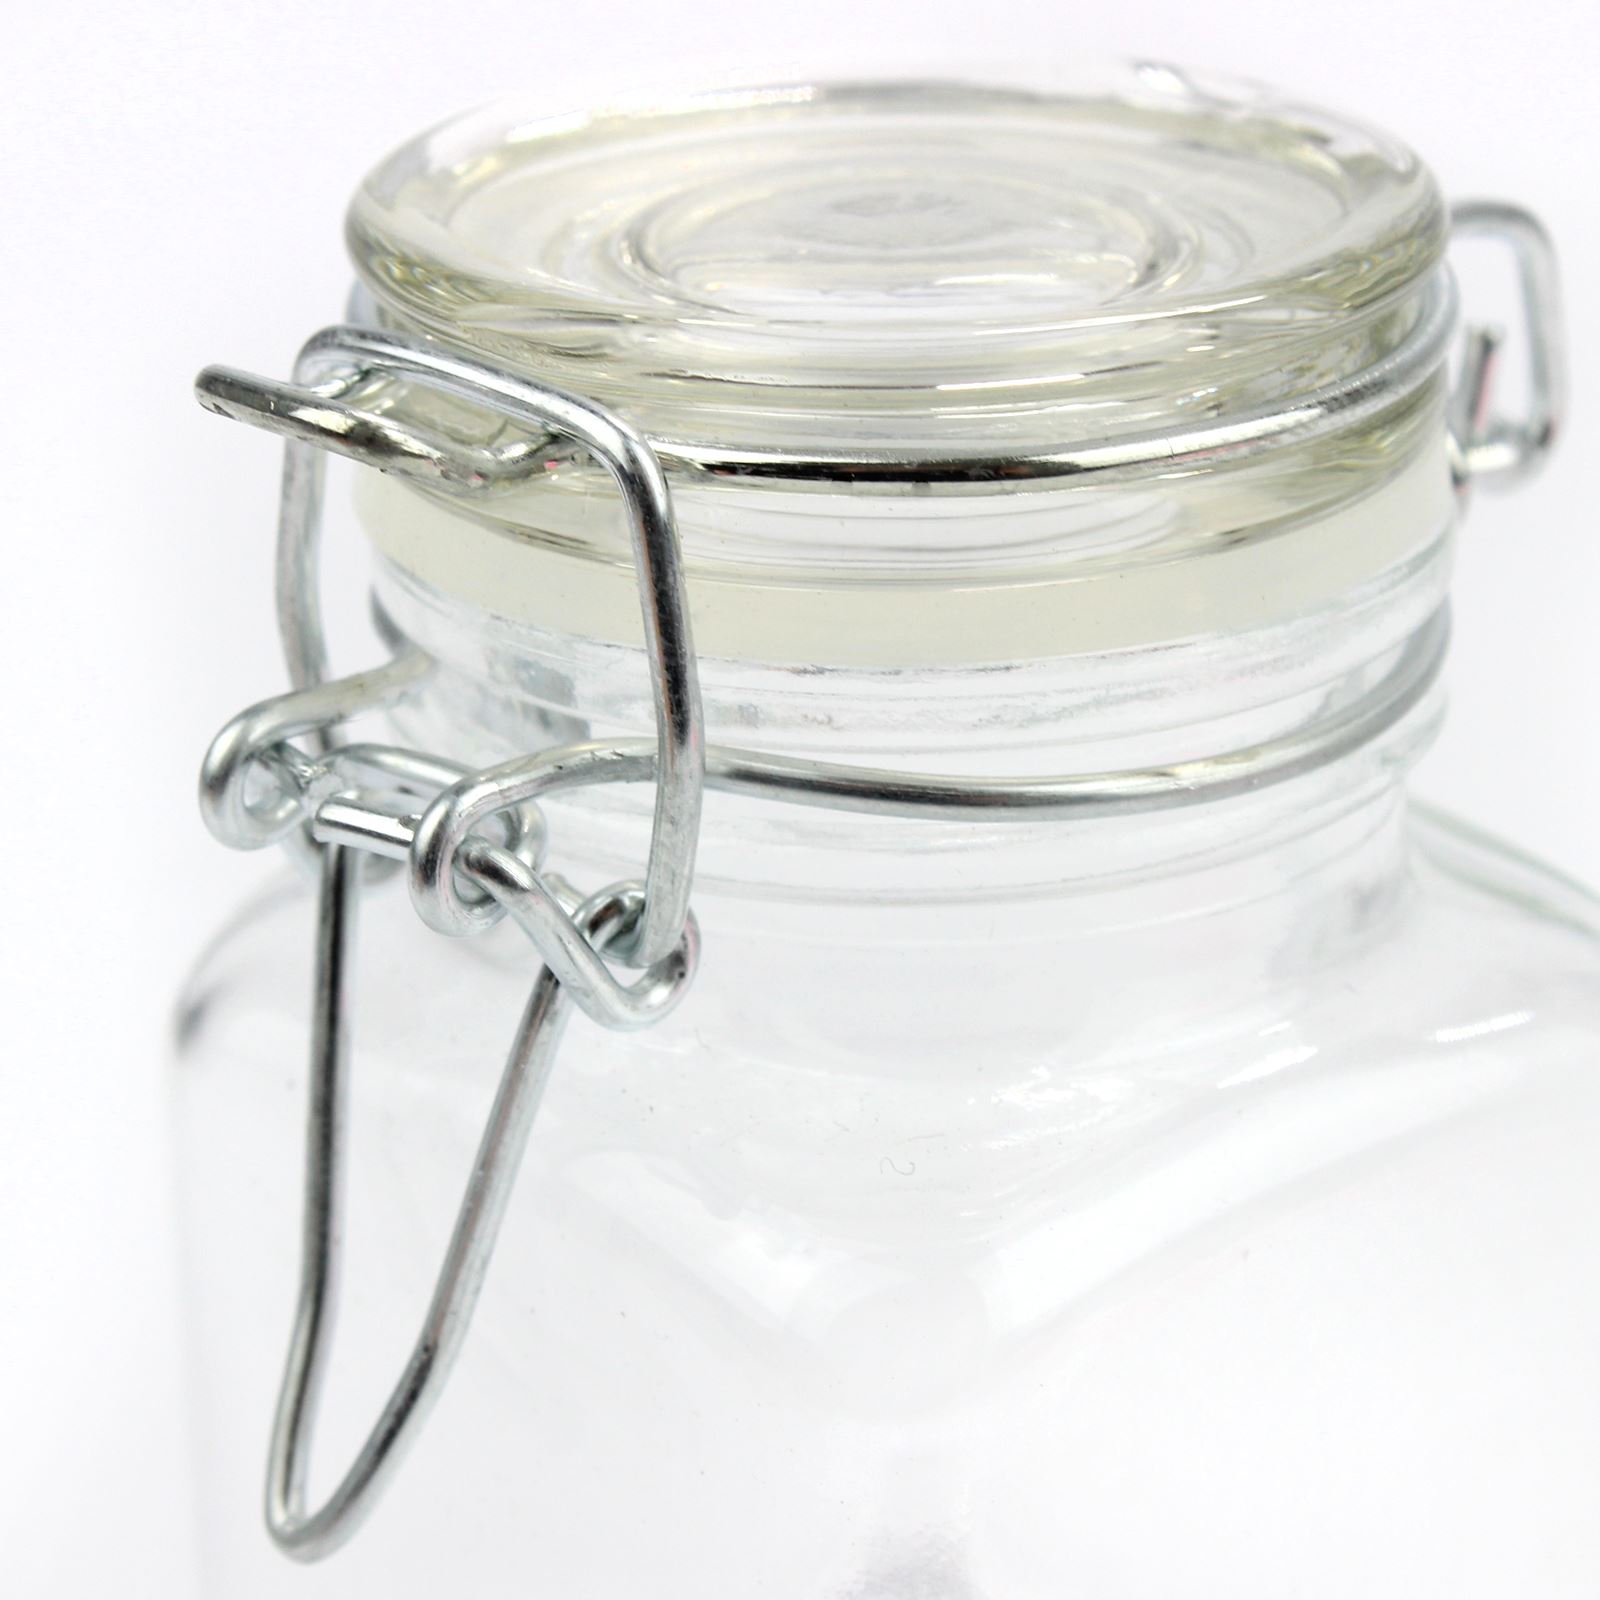 Mini Glass Spice Jars - Pack of 12 | M&W